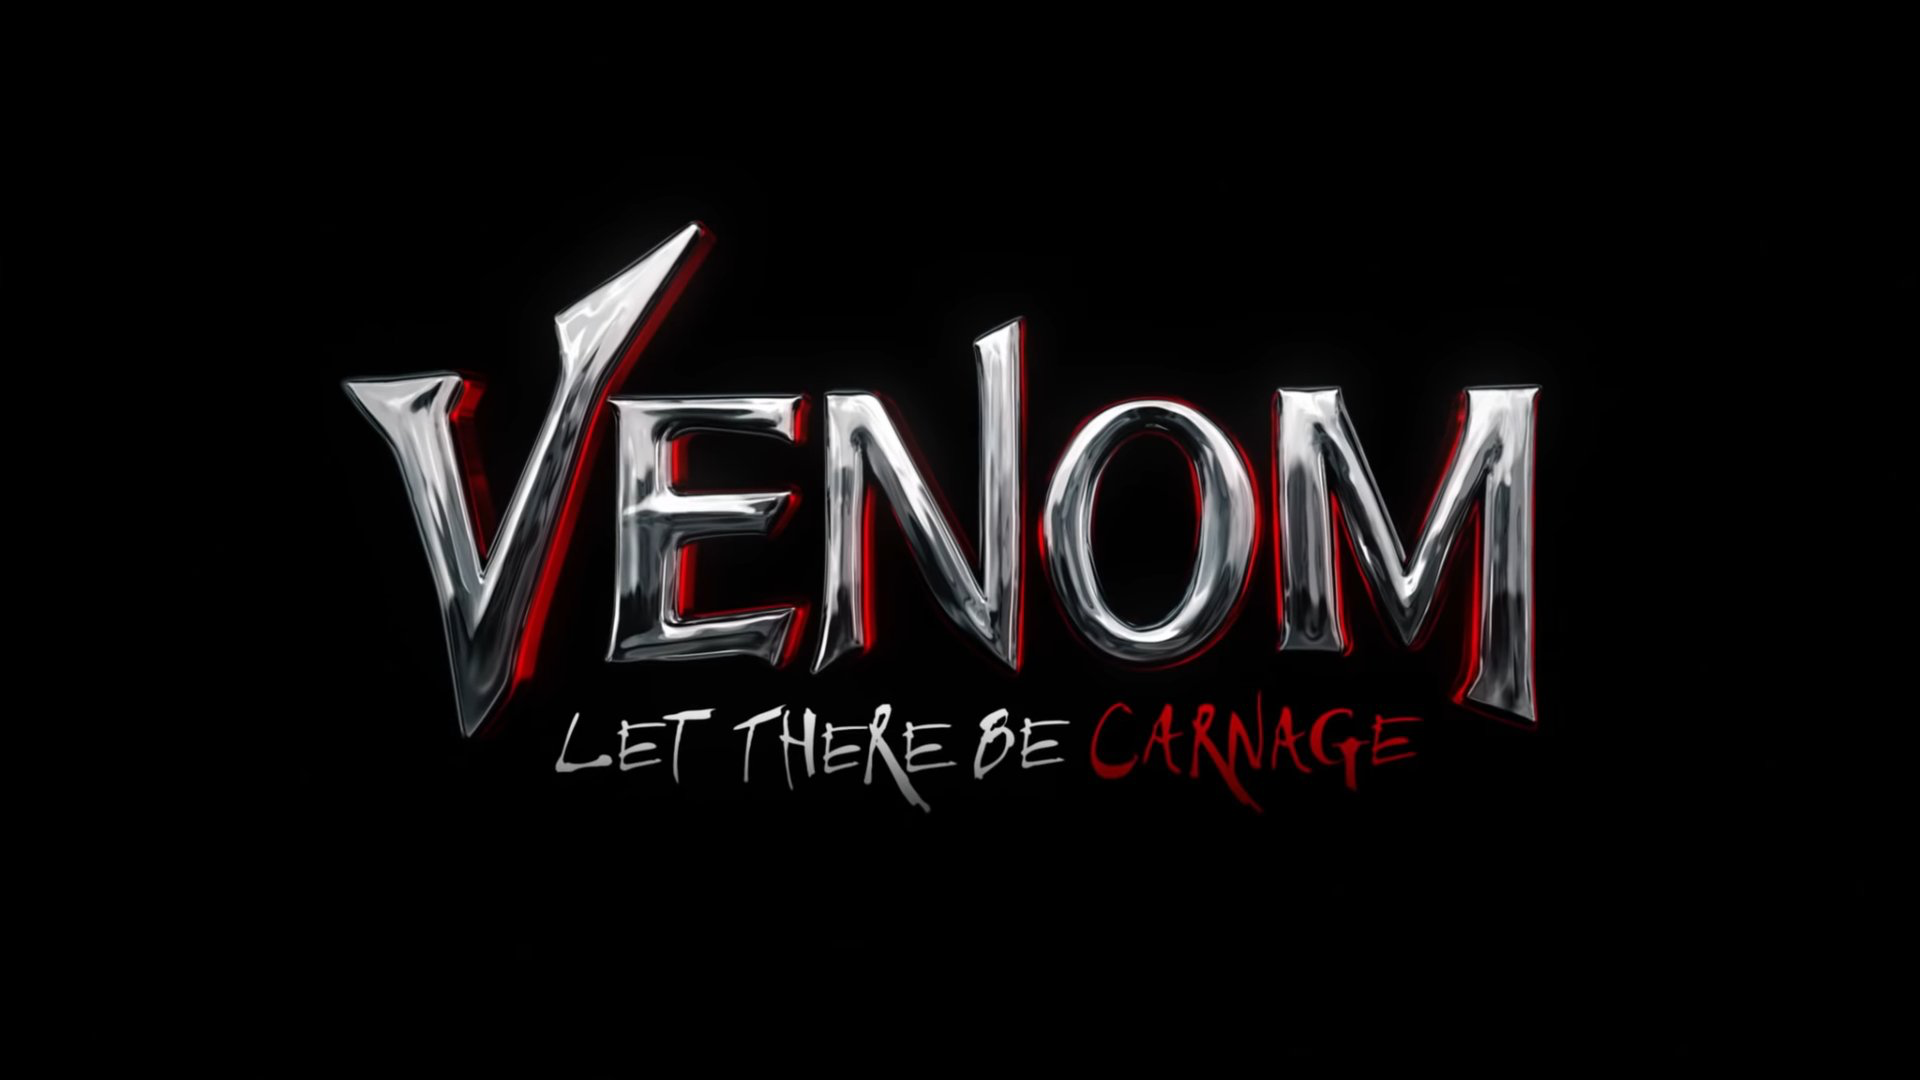 映画『ヴェノム：レット・ゼア・ビー・カーネイジ』の第二弾トレーラーが公開！！ストーリー・キャスト・公開日まとめ。 | MCU FAN LIFE